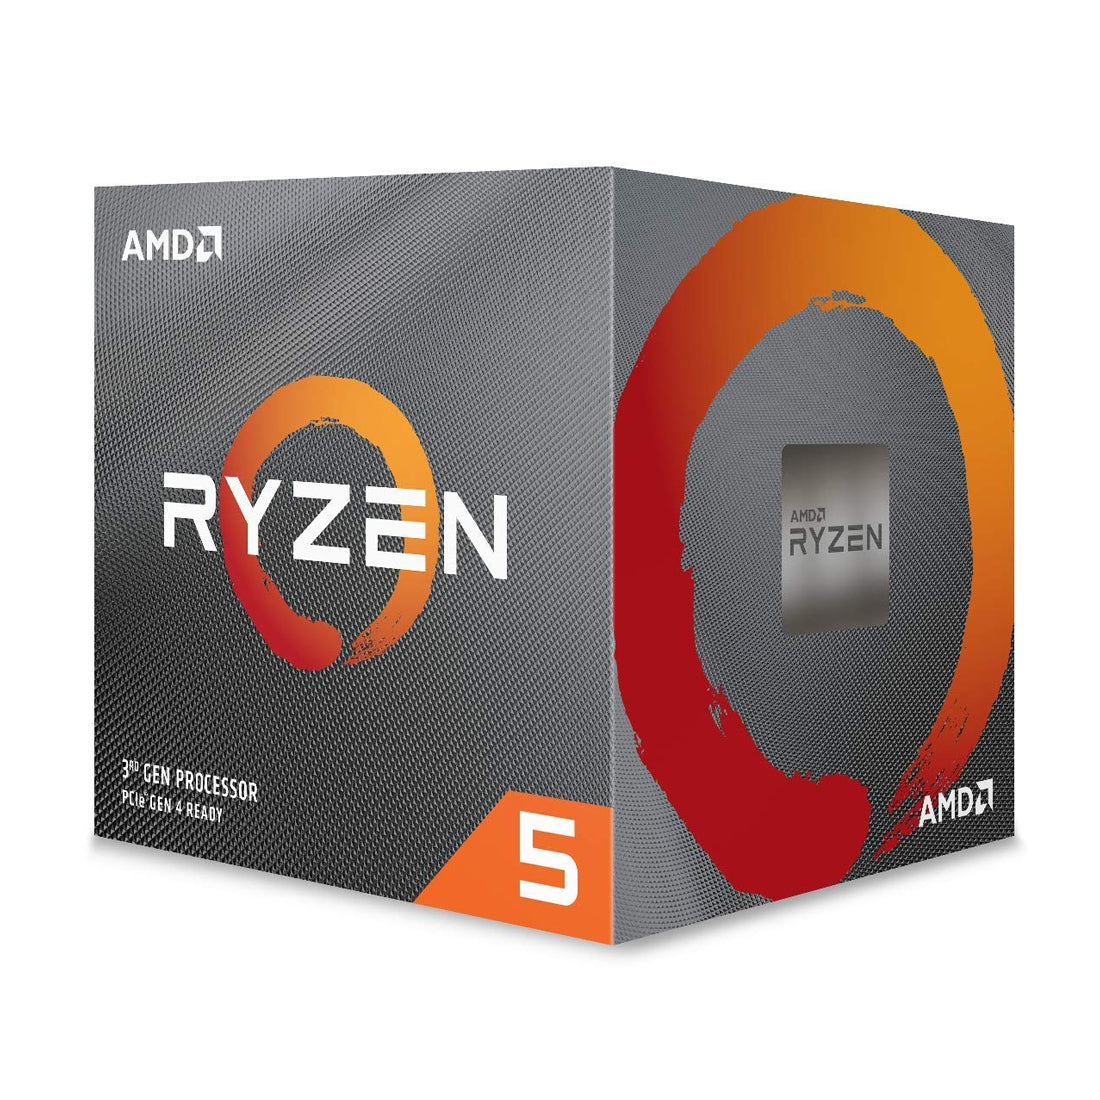 AMD Ryzen 5 3600XT डेस्कटॉप प्रोसेसर 6 कोर 4.5GHz तक 35MB कैश AM4 सॉकेट